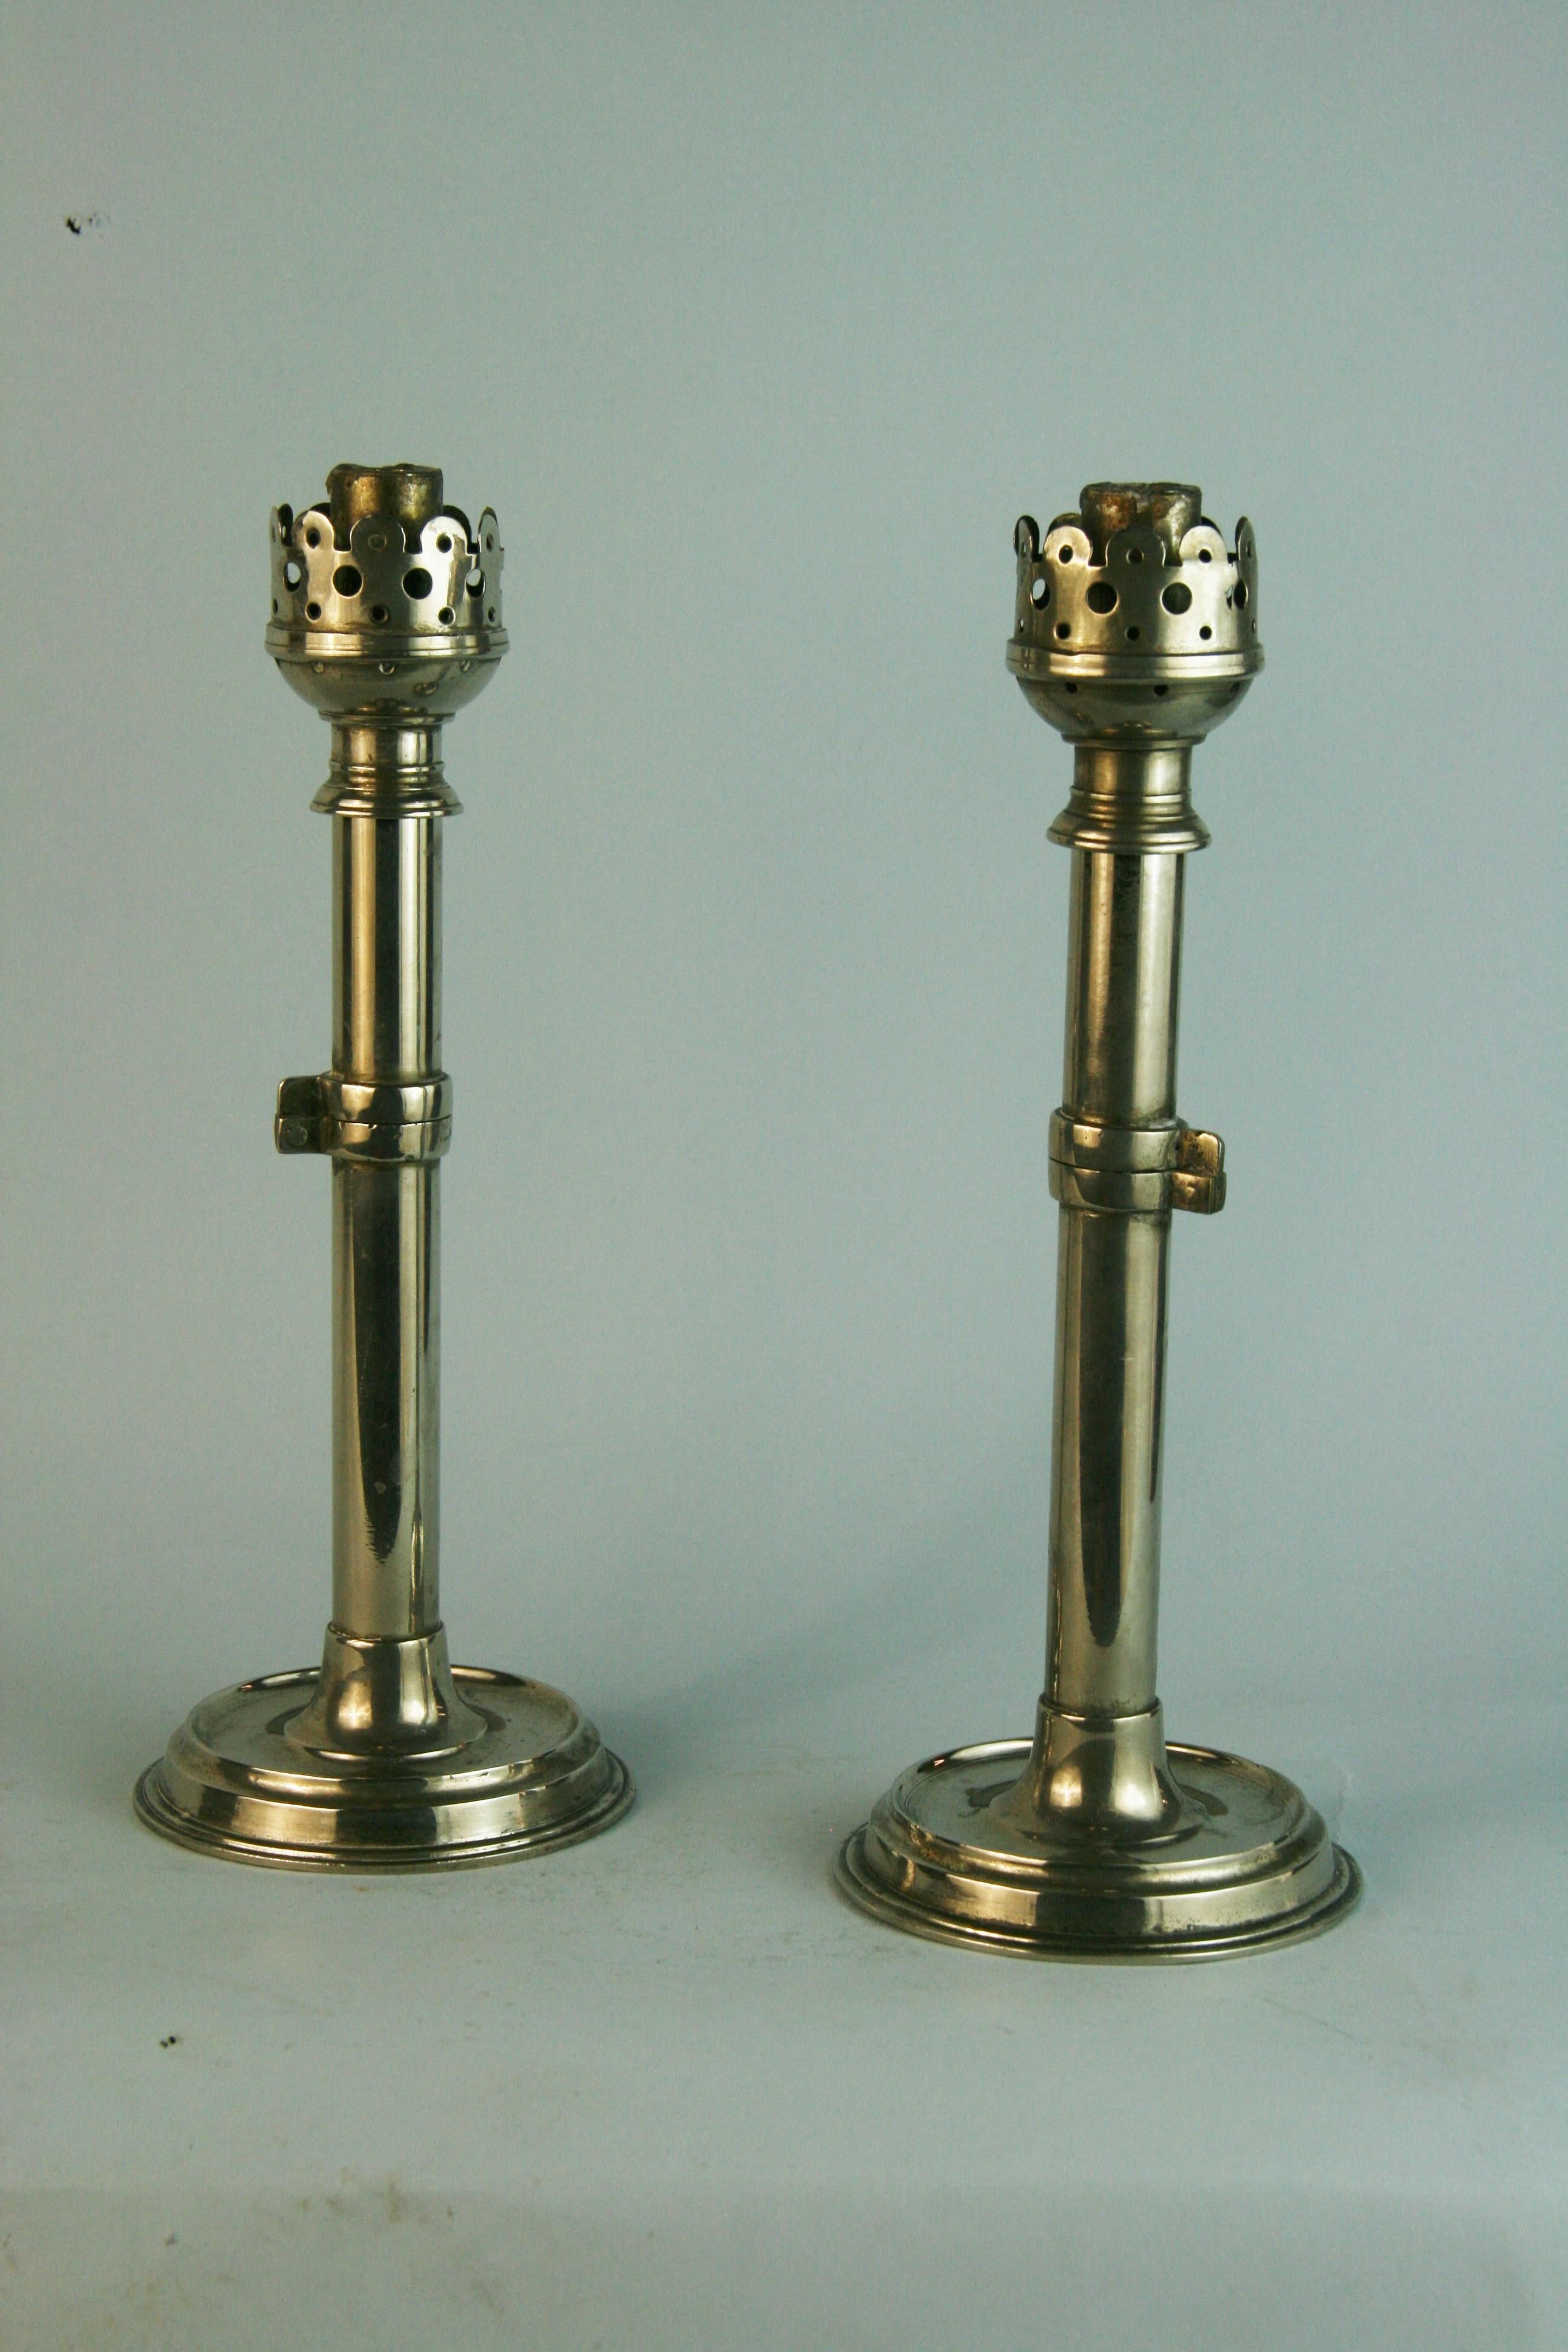 1367 Paar federbelastete Kerzenständer, die zu Wandleuchtern umfunktioniert werden können
Die Kerze befindet sich in einem federbelasteten Zylinder.